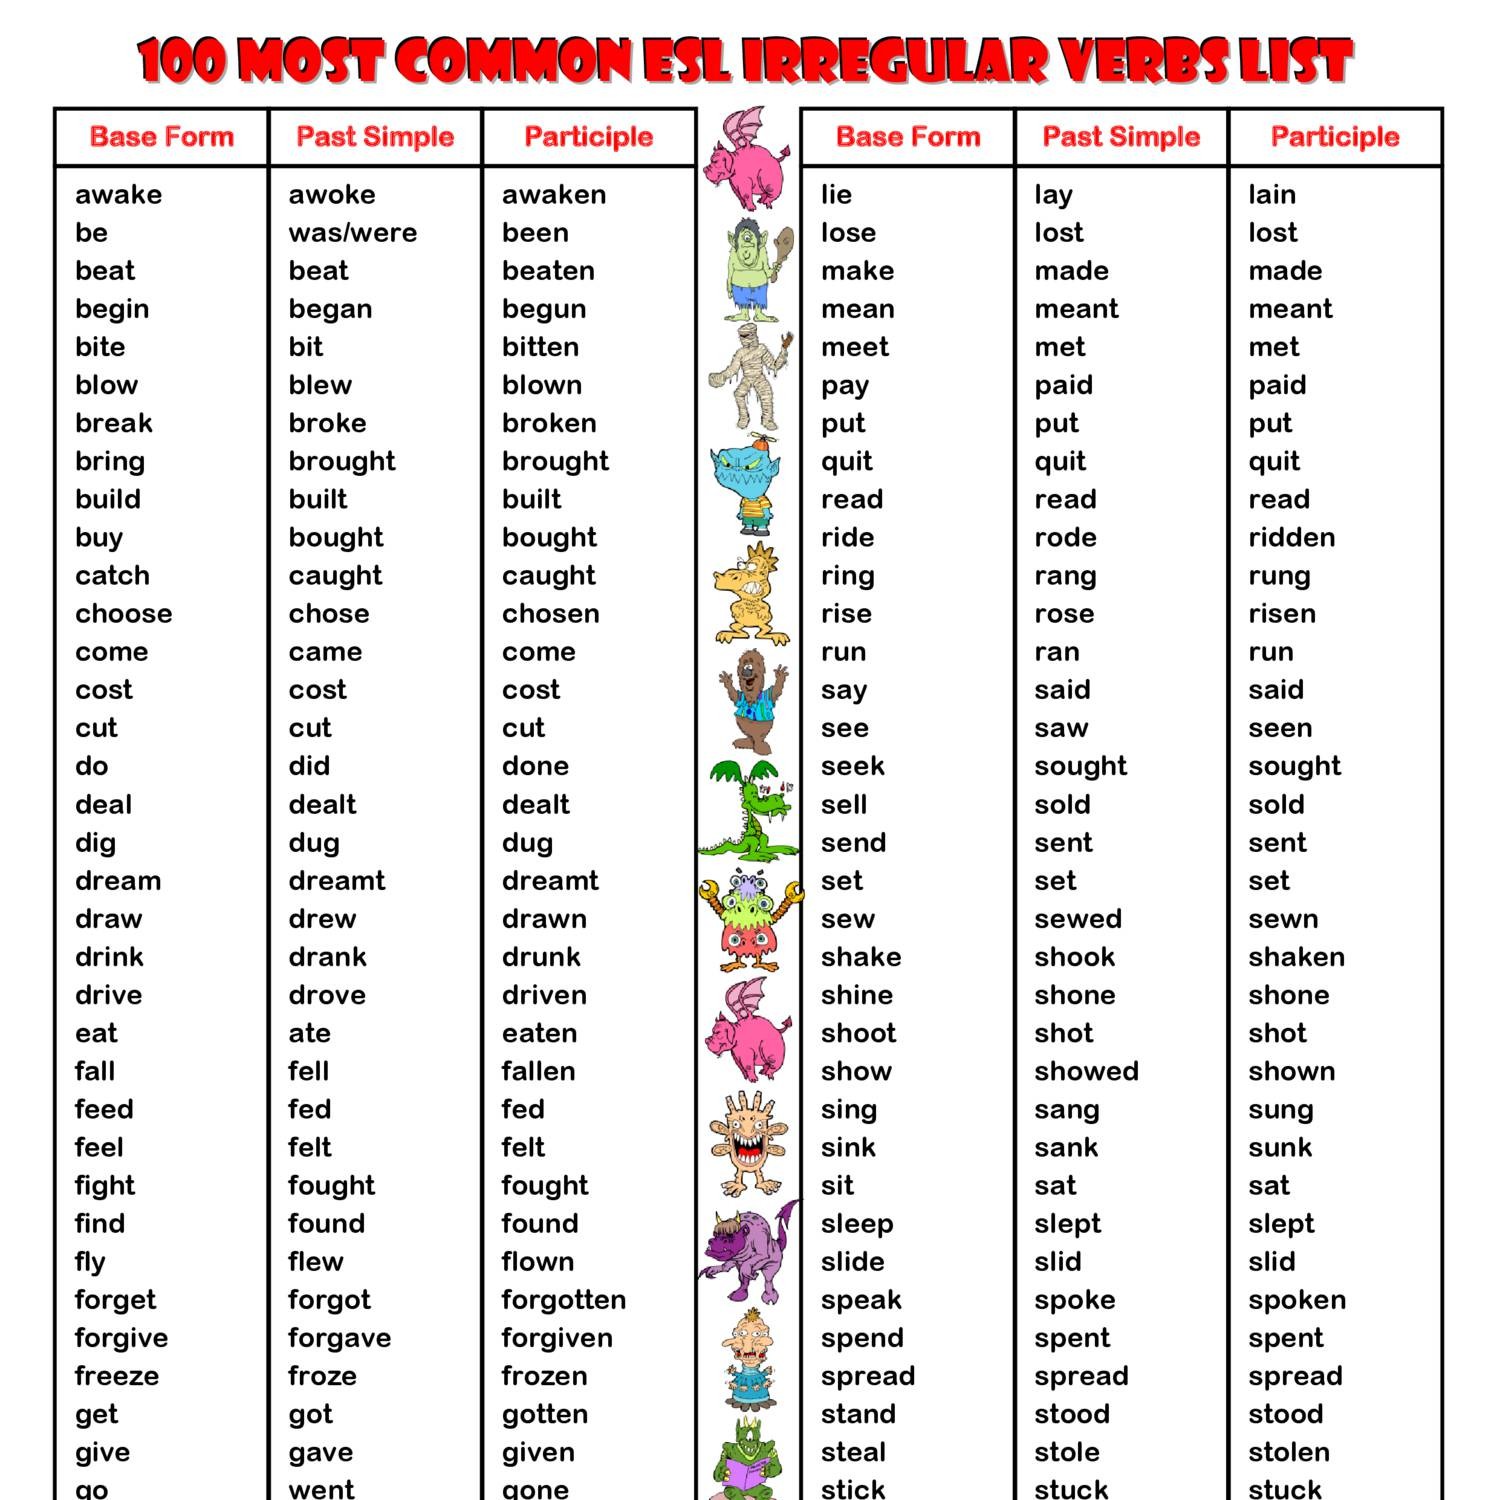 100-most-common-irregular-verbs-list-esl-handout-verbs-list-vrogue